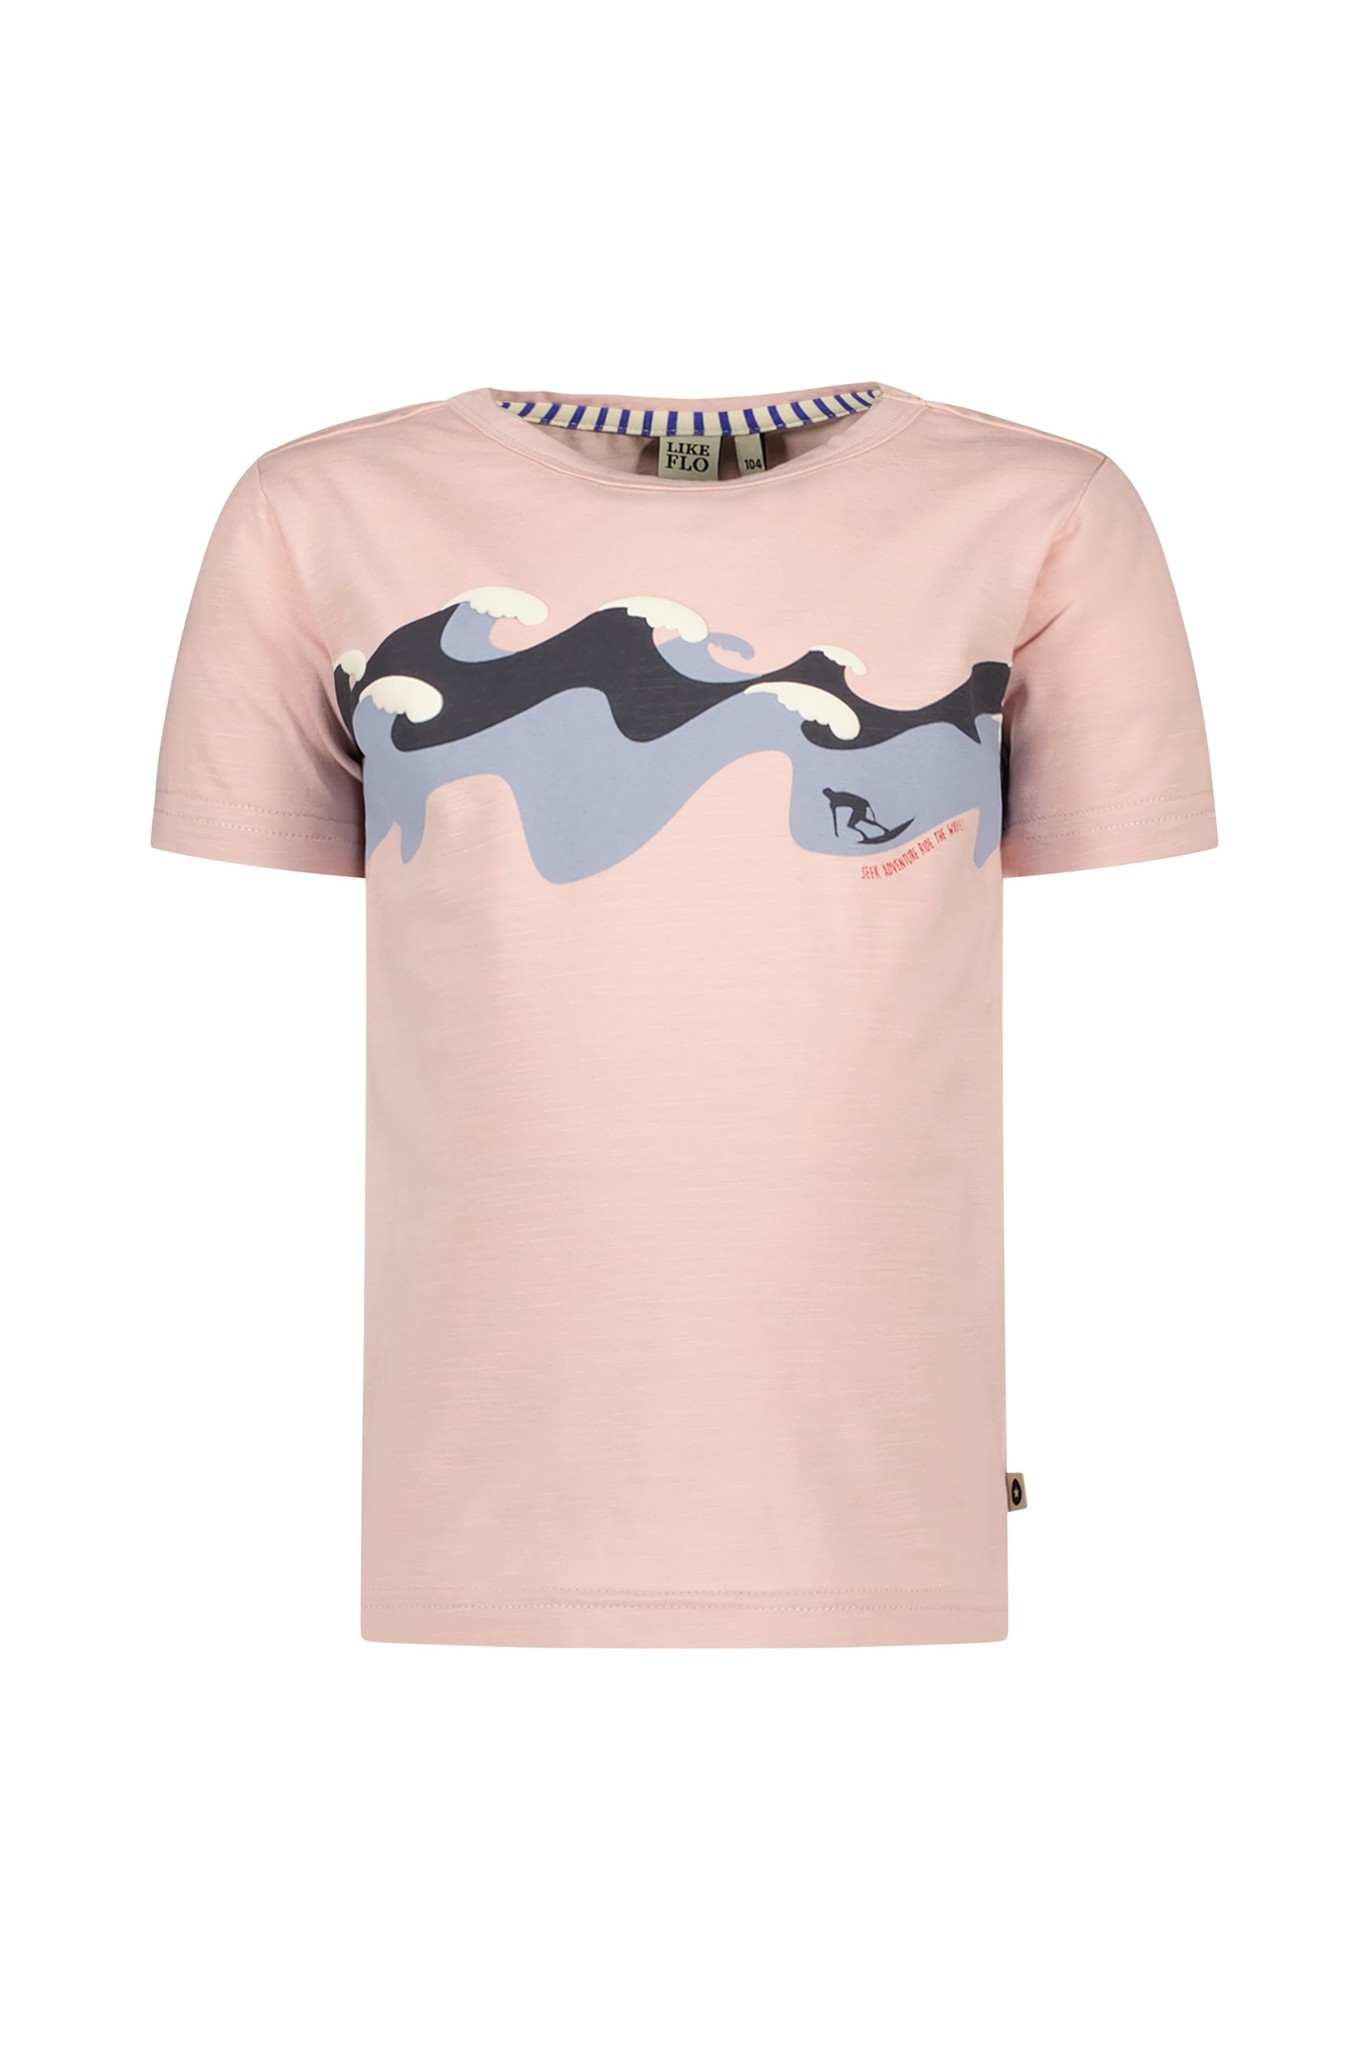 Like Flo Jongens t-shirt - Oud roze